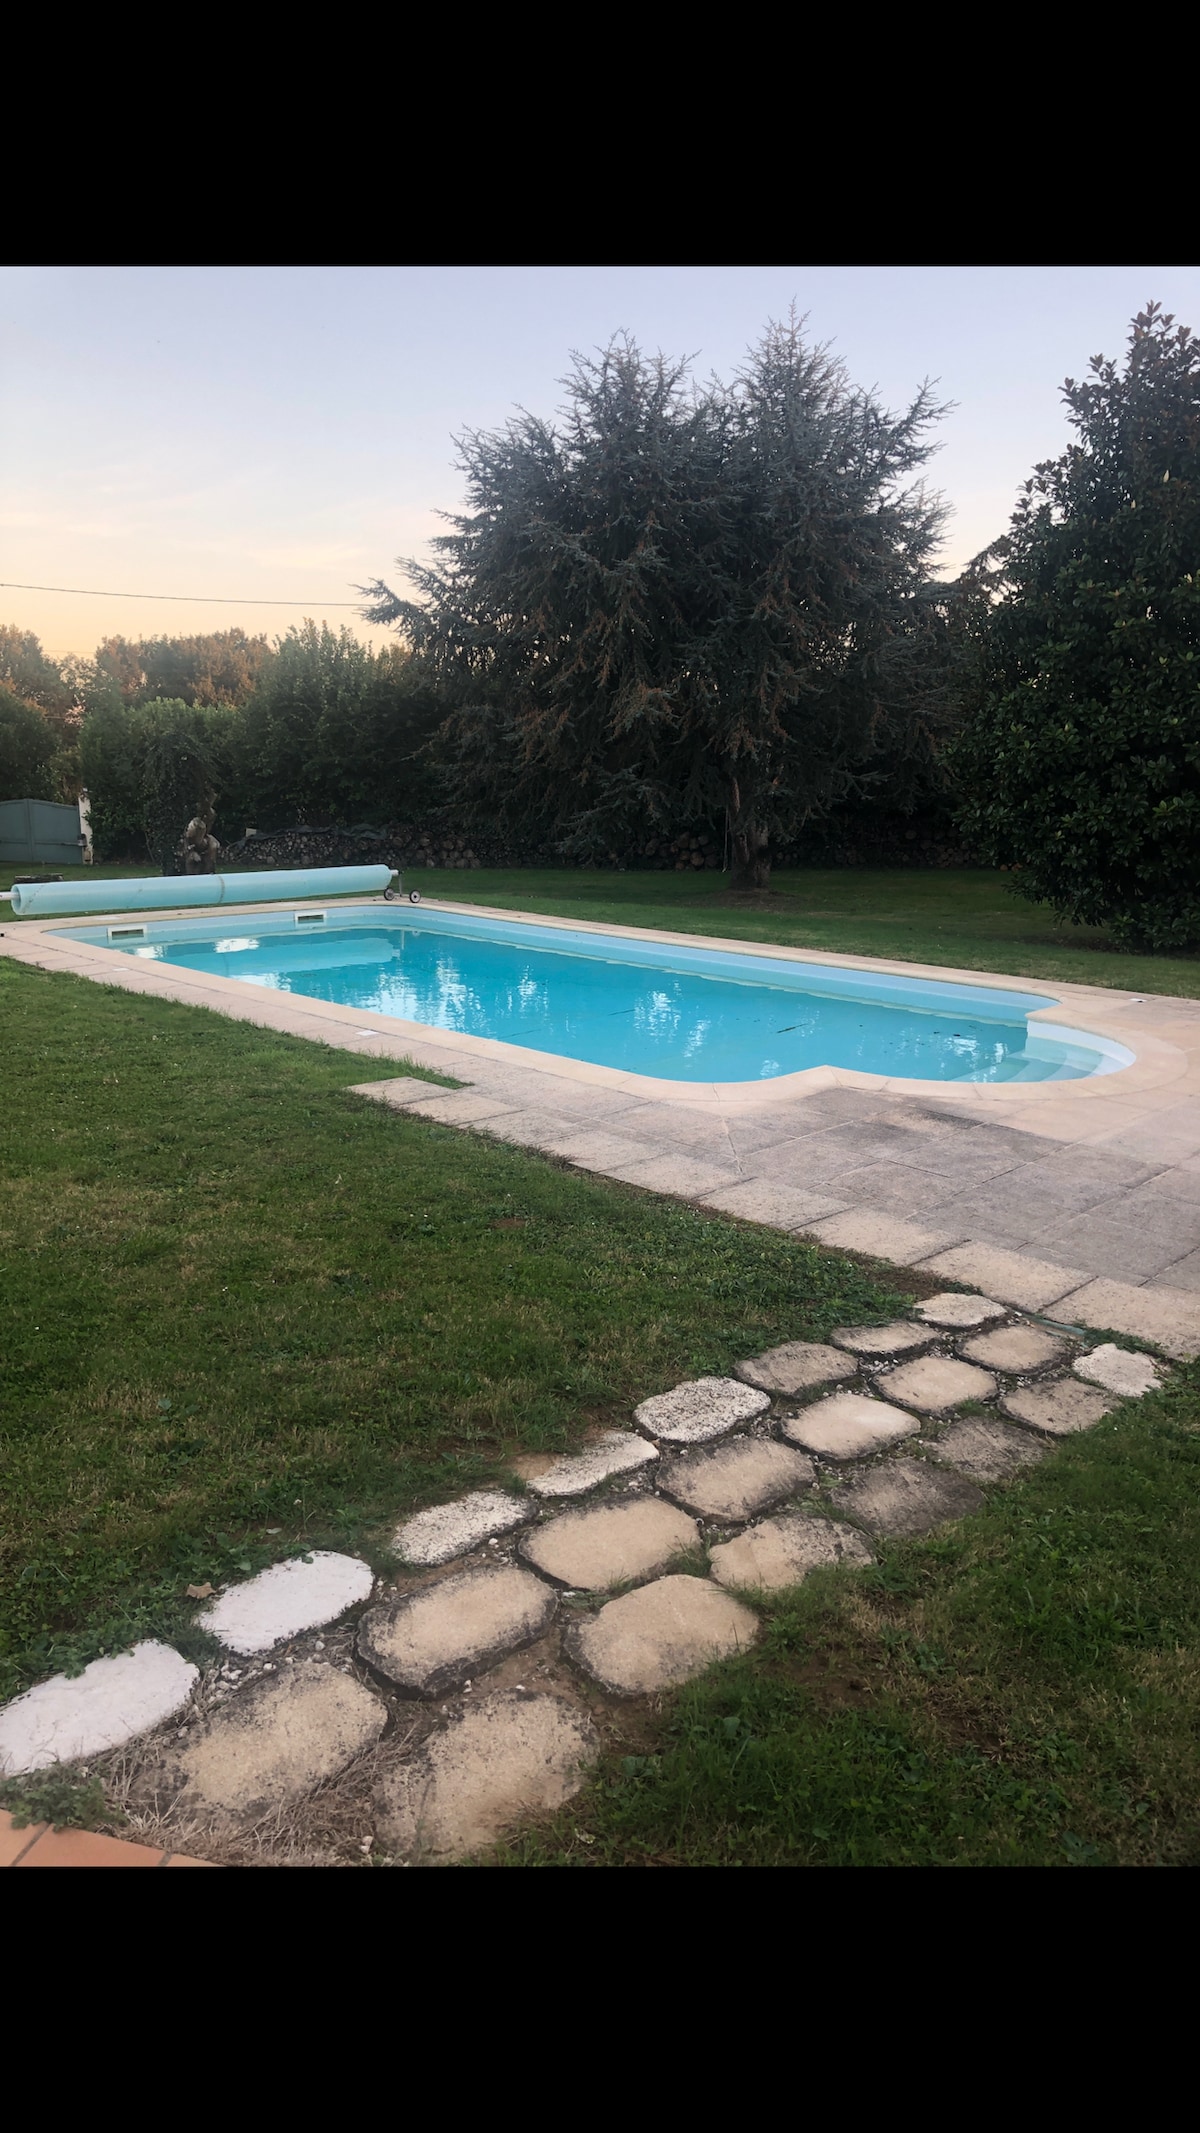 Maison de vacances avec piscine